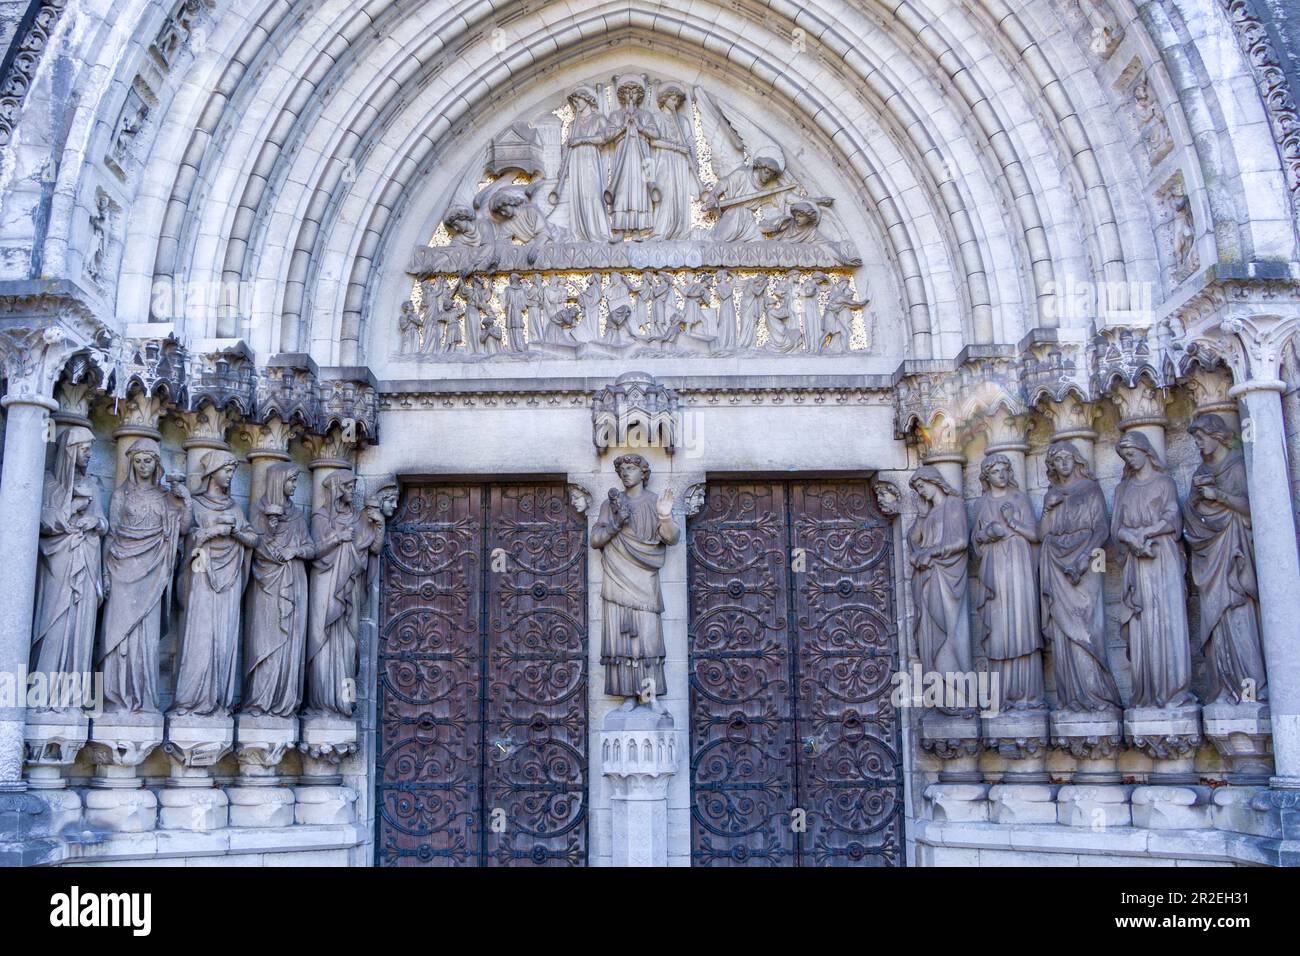 Detail der Fassade der Kathedrale von Cork. Die Fassade des Gebäudes. Neogotischer Stil. Skulptur am Vordereingang von fünf Weisen und Narren Stockfoto